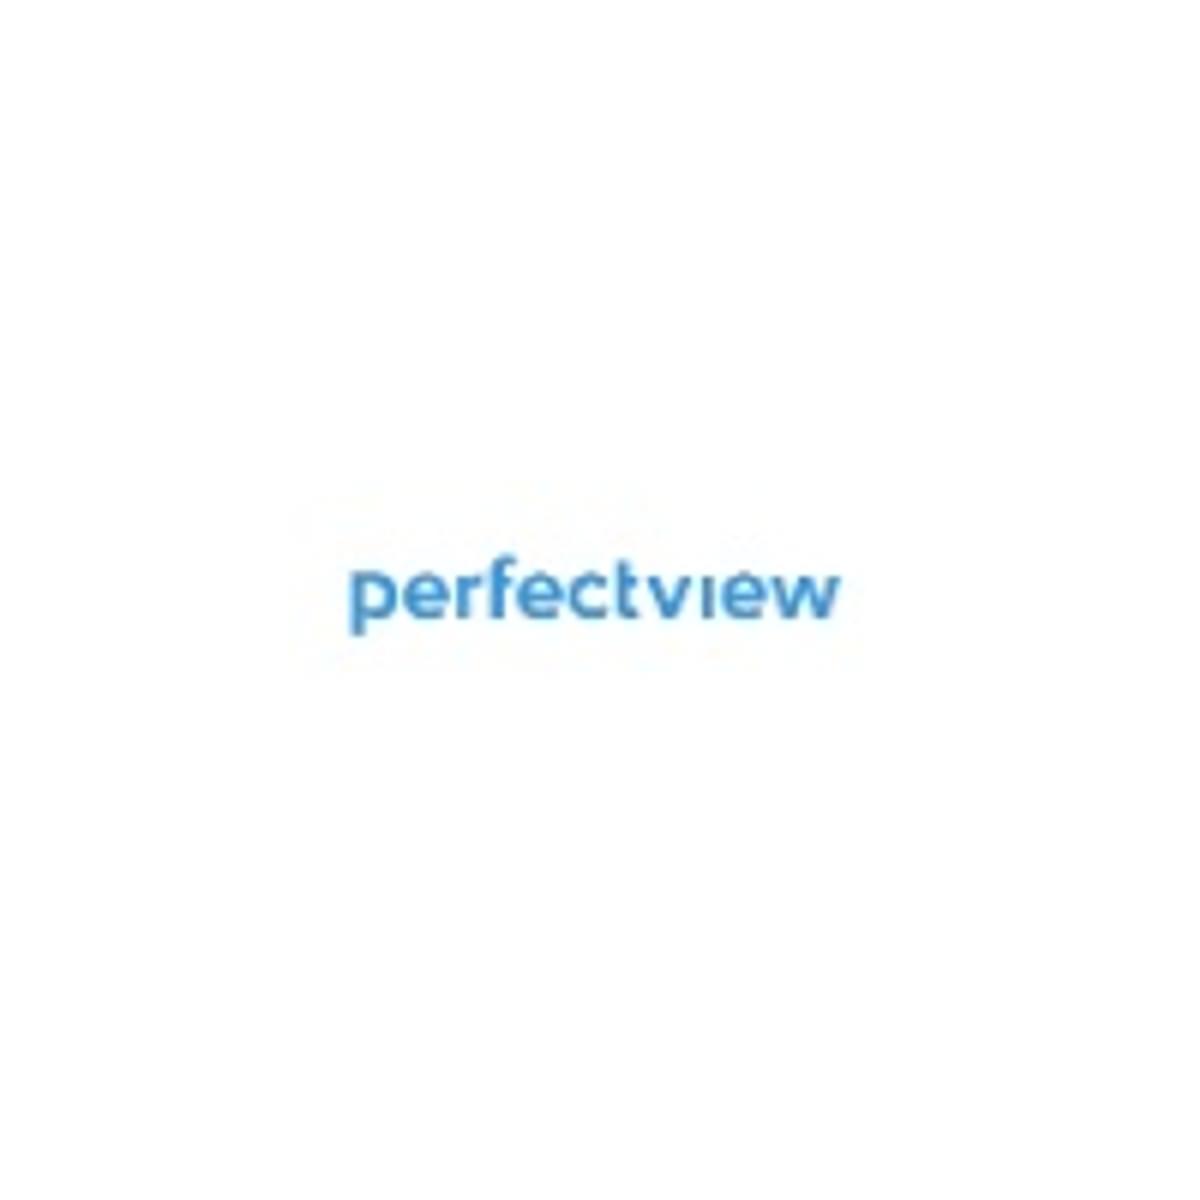 Perfectview CRM platform kiest voor Denit image